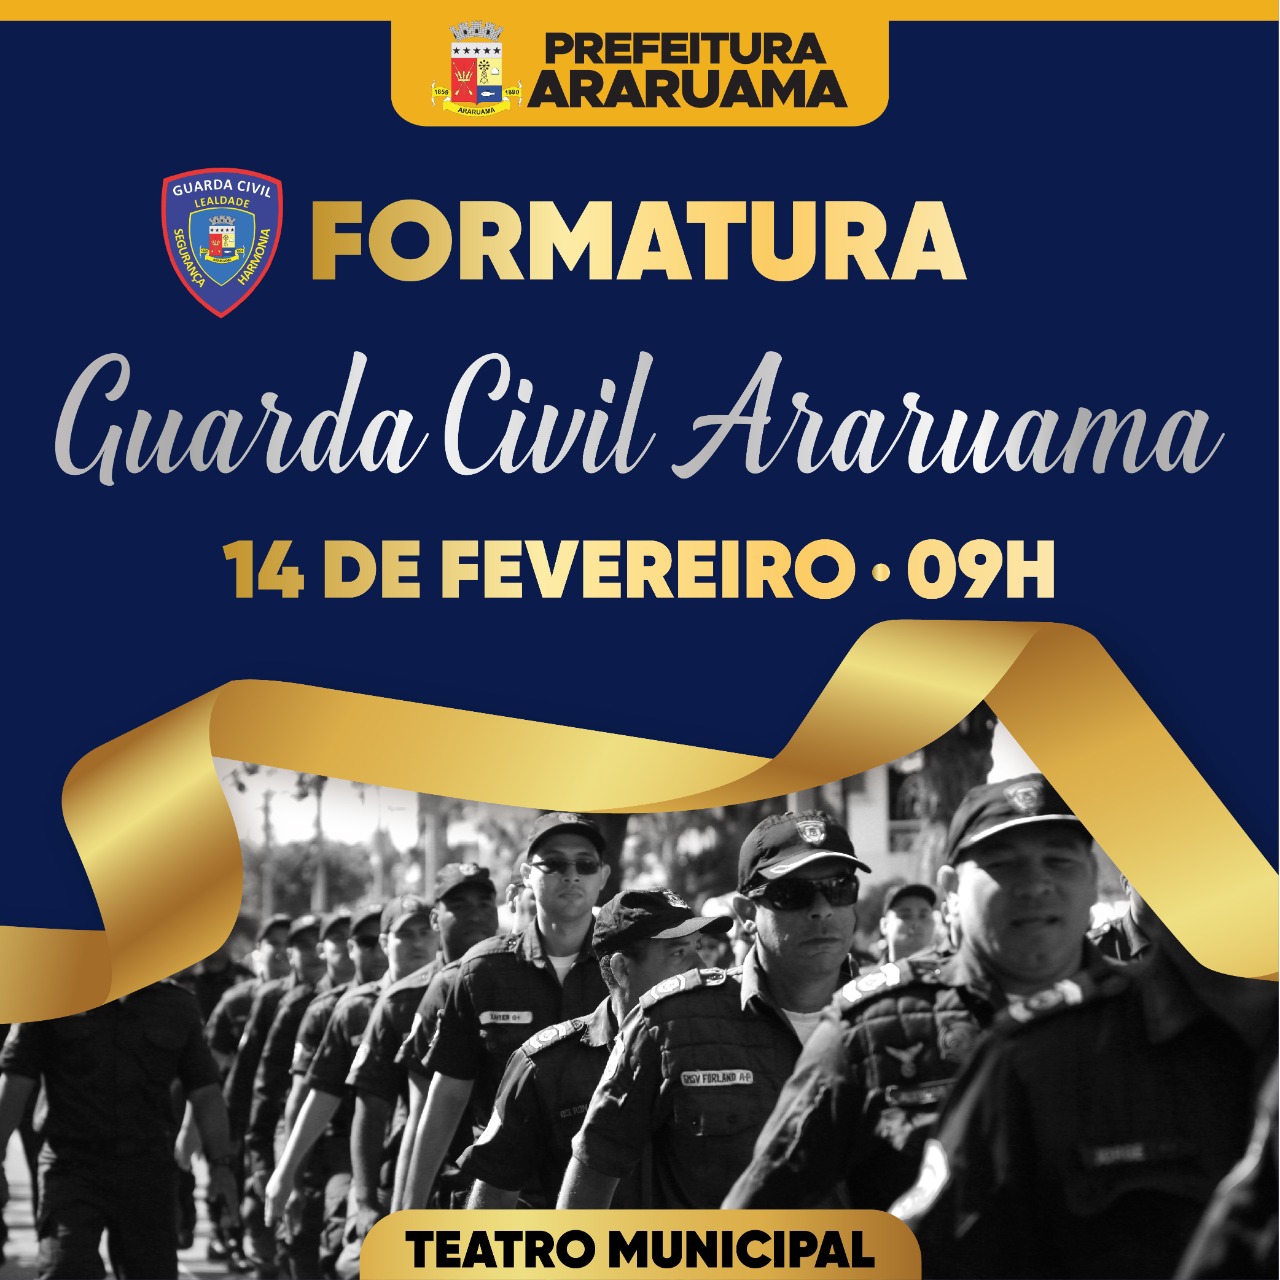 Prefeitura de Araruama vai realizar a formatura de 30 novos agentes da Guarda Civil